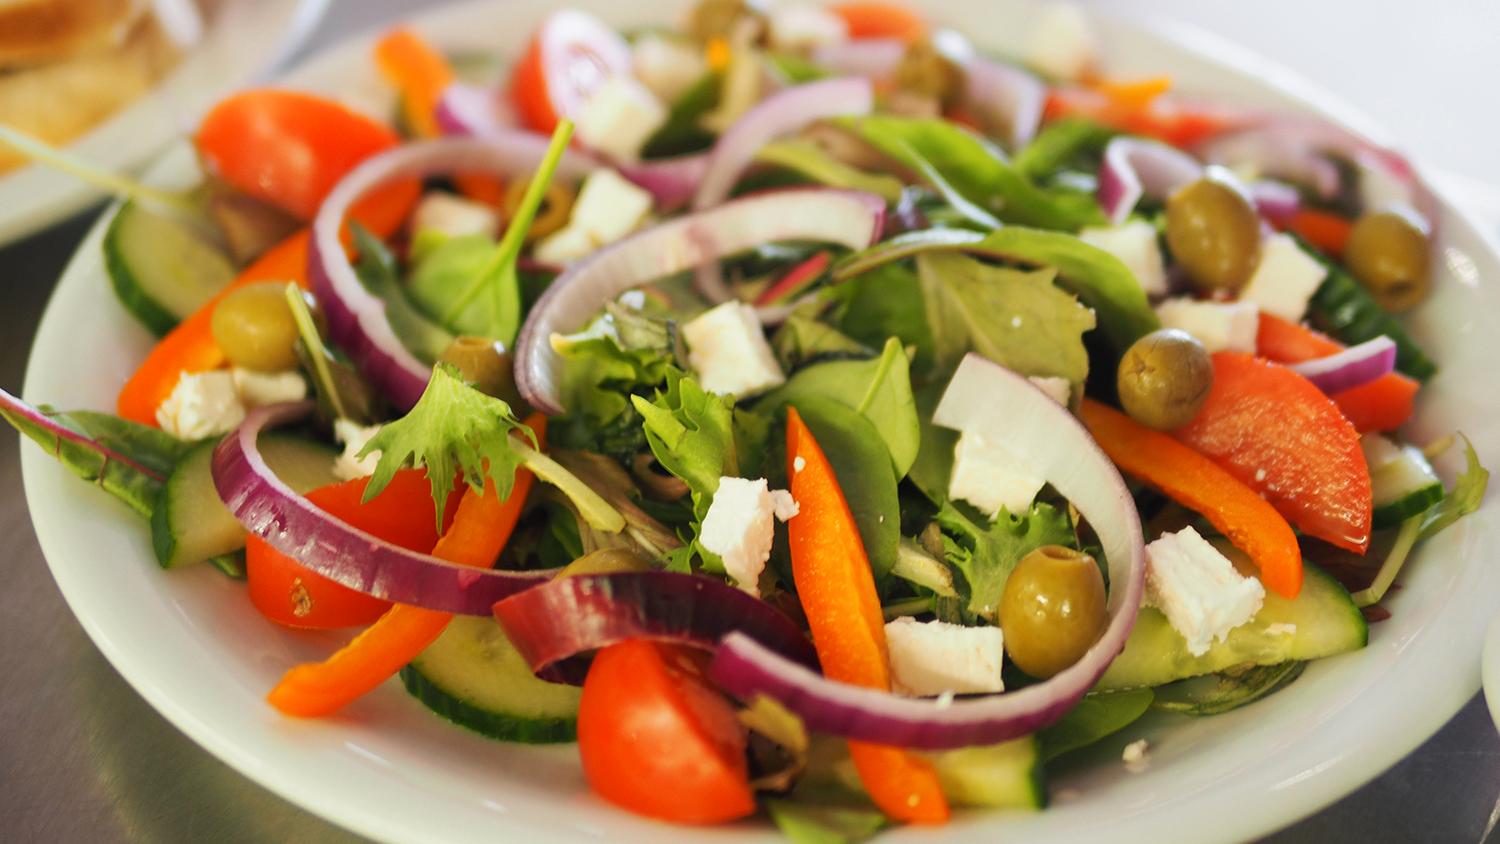 Är du fortfarande hungrig efter en stor portion mat? Testa att inleda måltiden med råa grönsaker eller soppa.